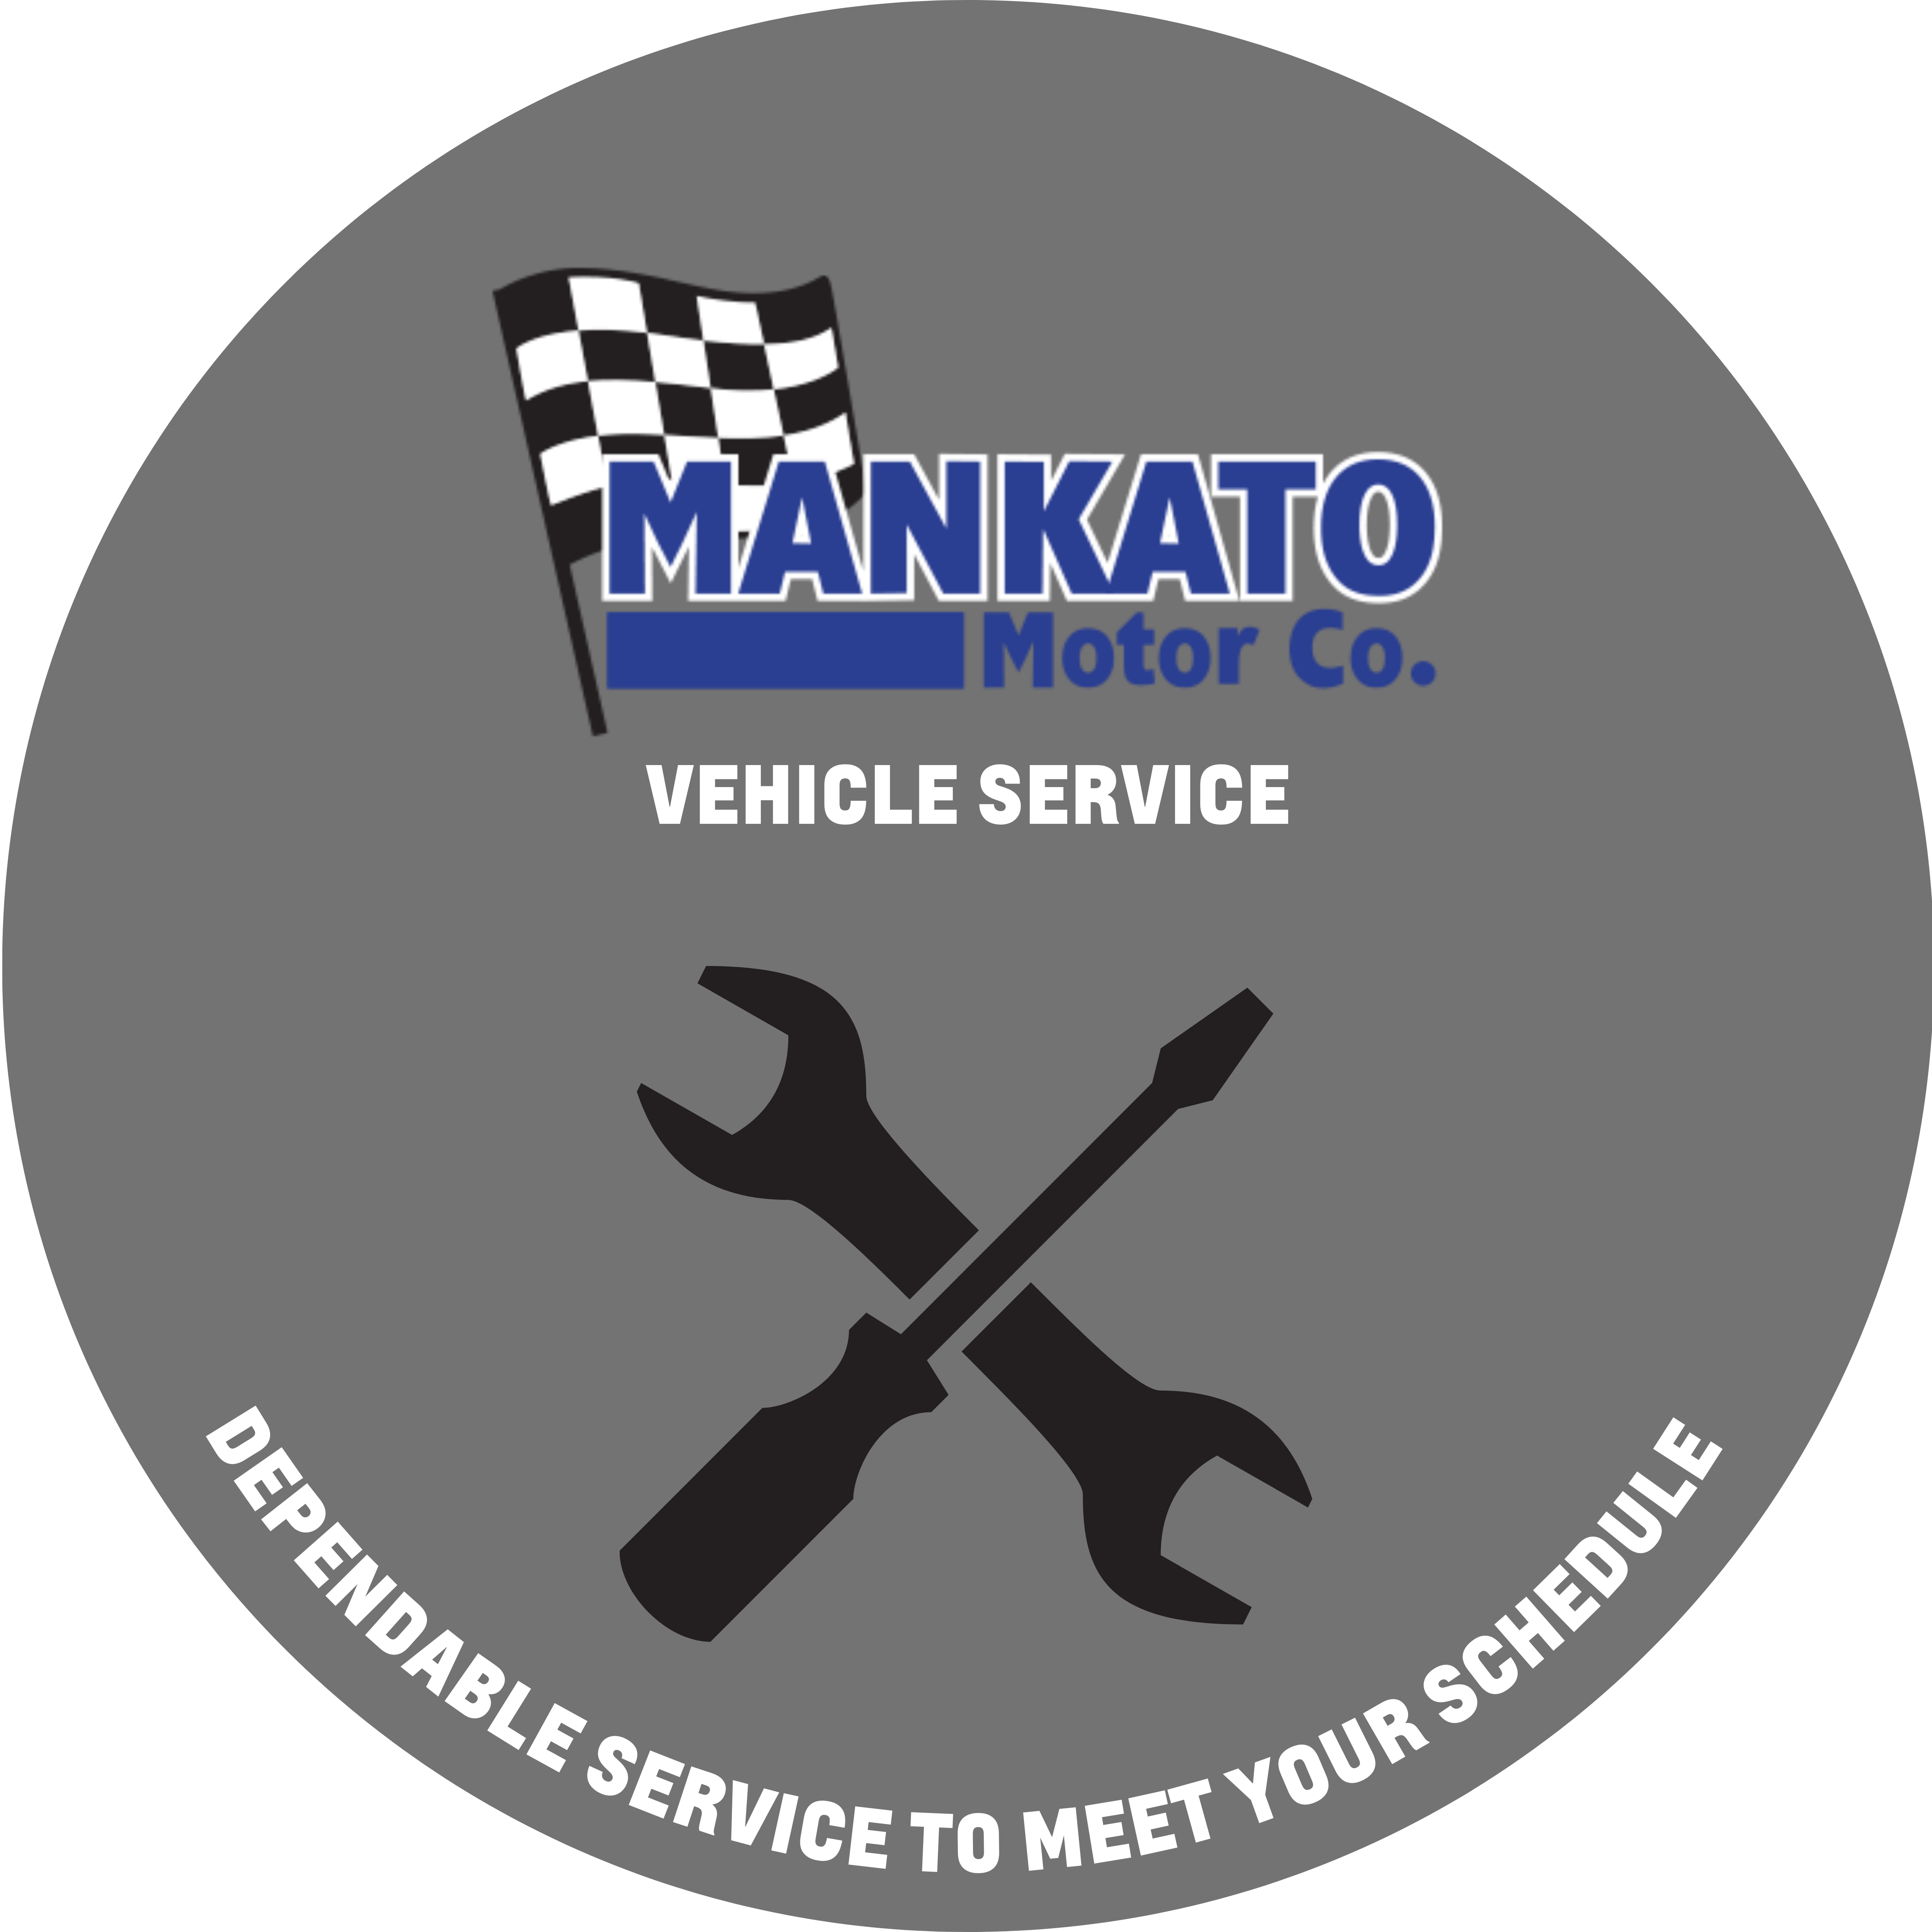 Mankato Motor Company in Mankato MN